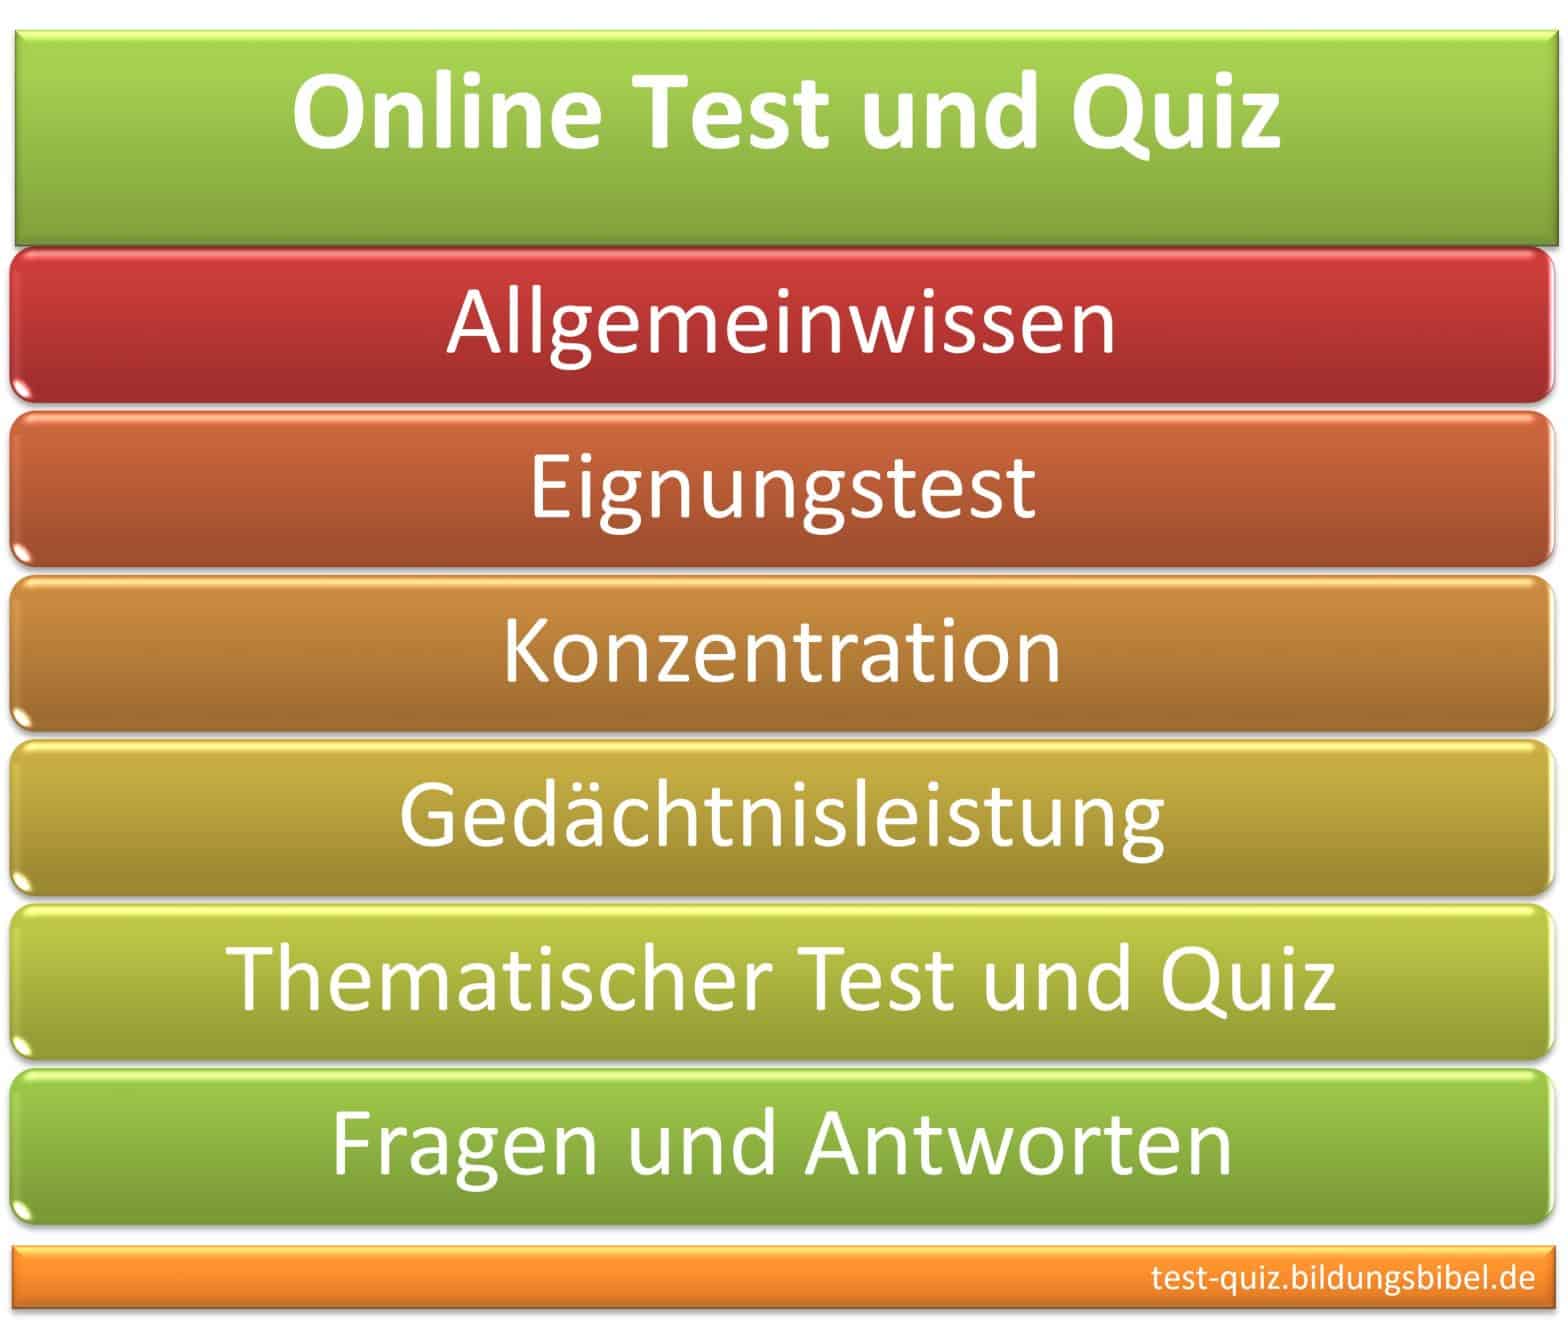 Online Test und Quiz Quizfragen und Antworten, Wissen, Lernen, Allgemeinwissen stärken, Eignungstest, Konzentration & Gedächtnisleistung steigern.